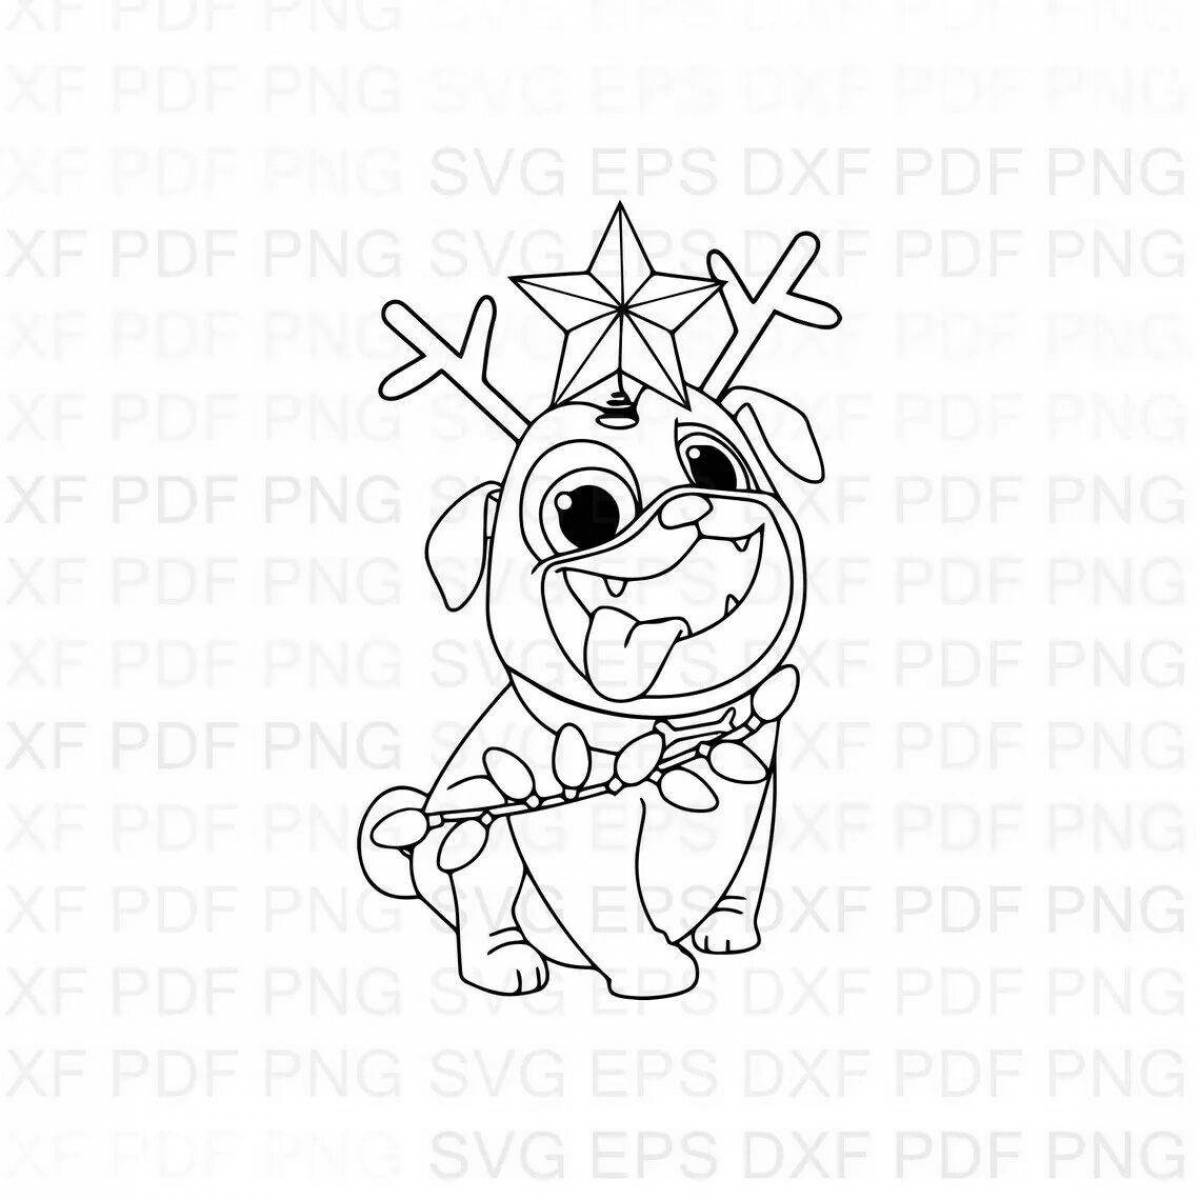 Animated Christmas pug coloring book